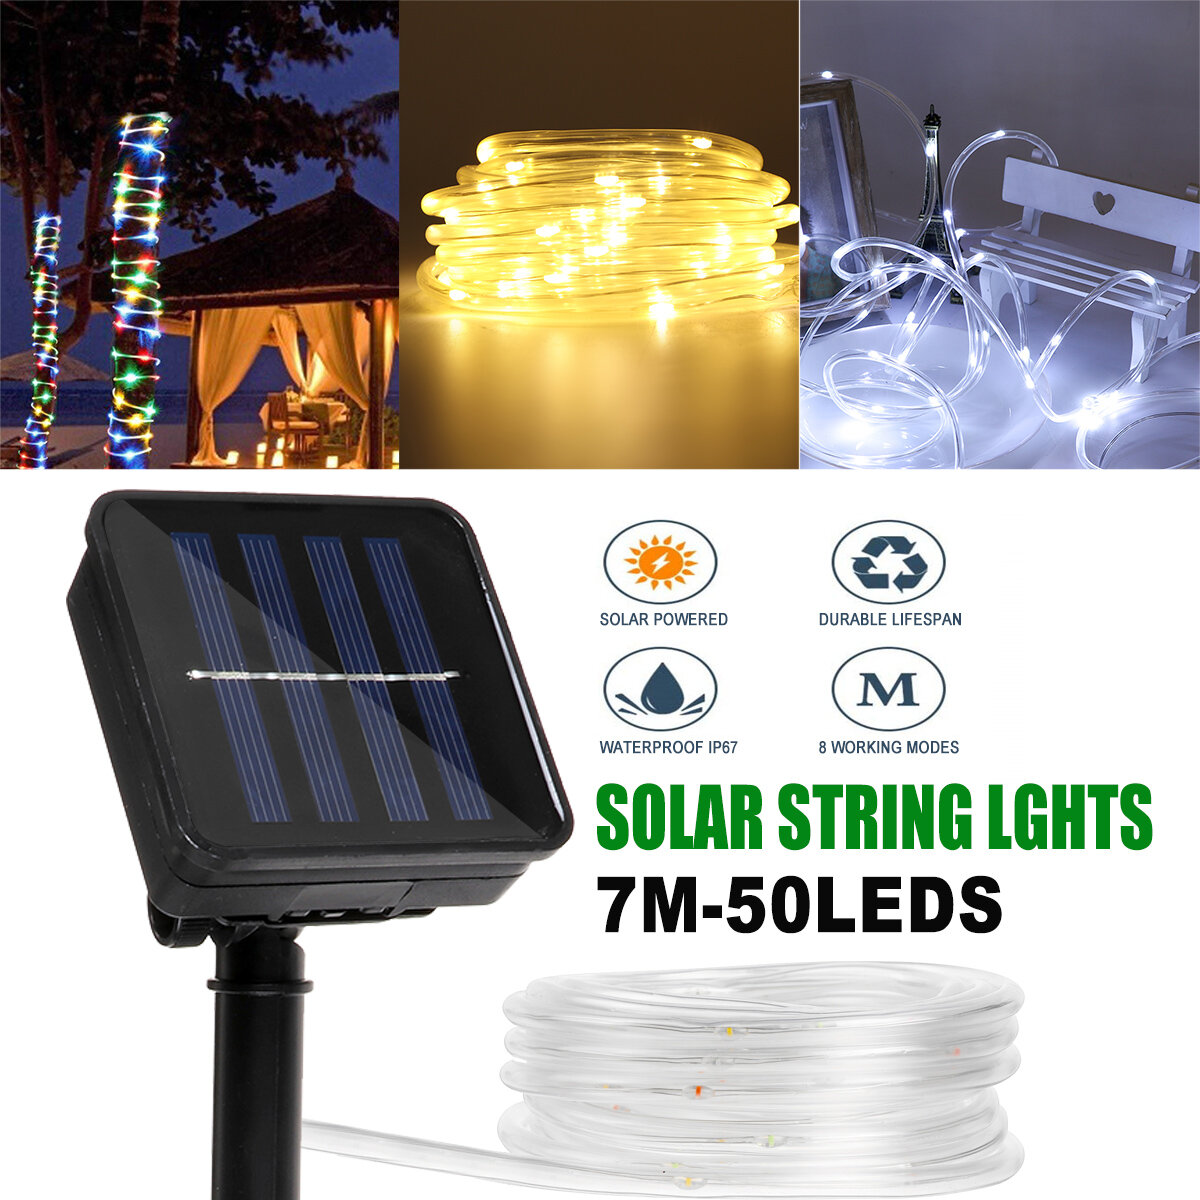 7M LED Solar String Light 8 Modi PVC Tube Waterproof IP67 Outdoor Garden Lamp